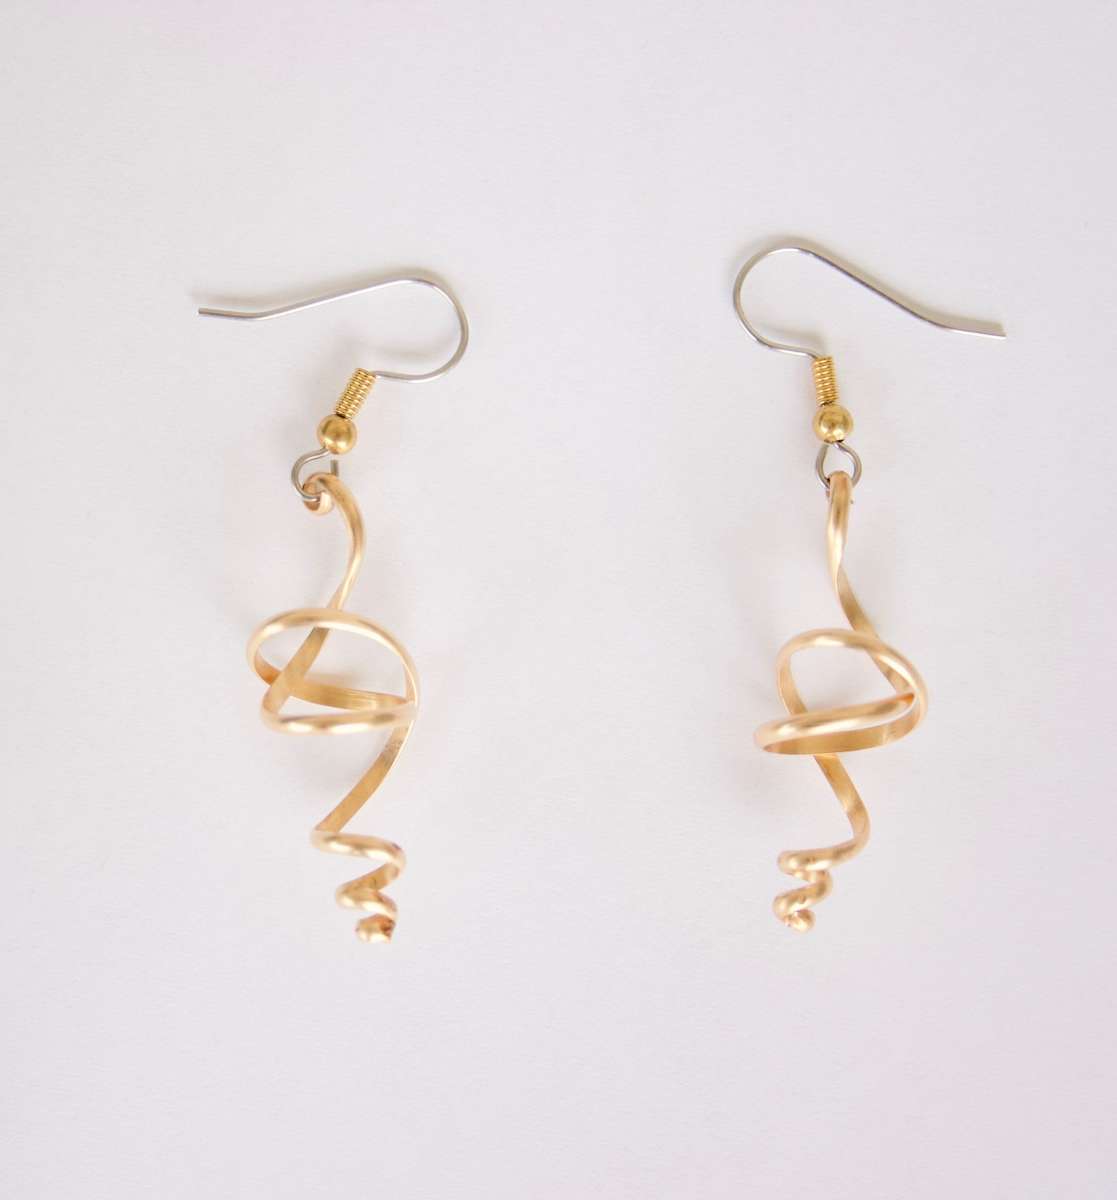 Twists 1 1/4" earrings, surgical steel hooks